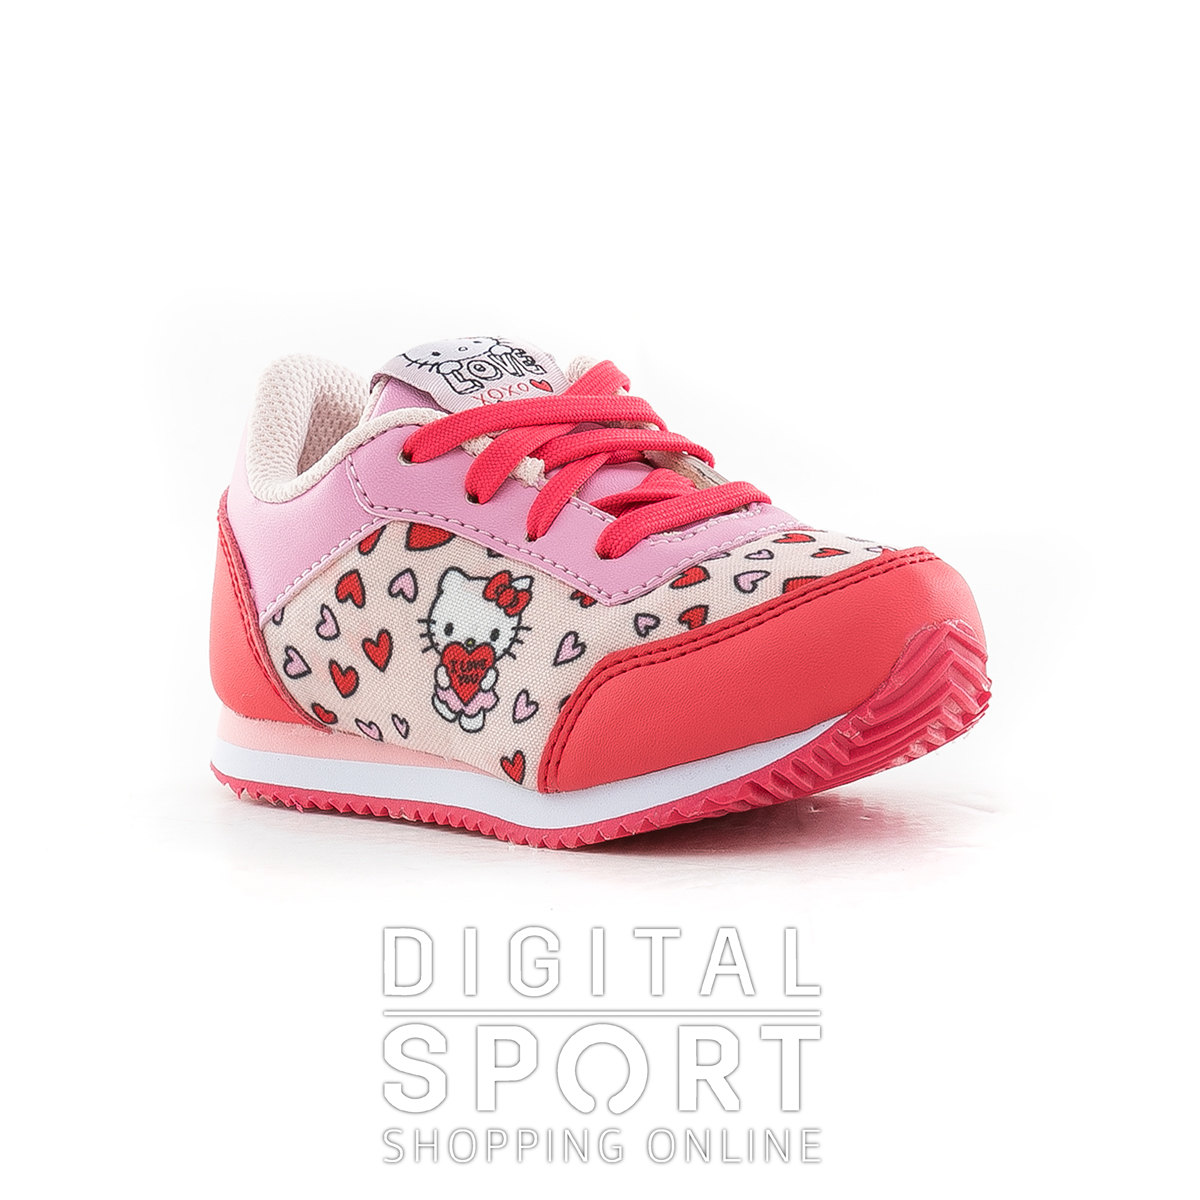 Zapatillas Hello Kitty Topper Sale Online, SAVE 47% - online-pmo.com